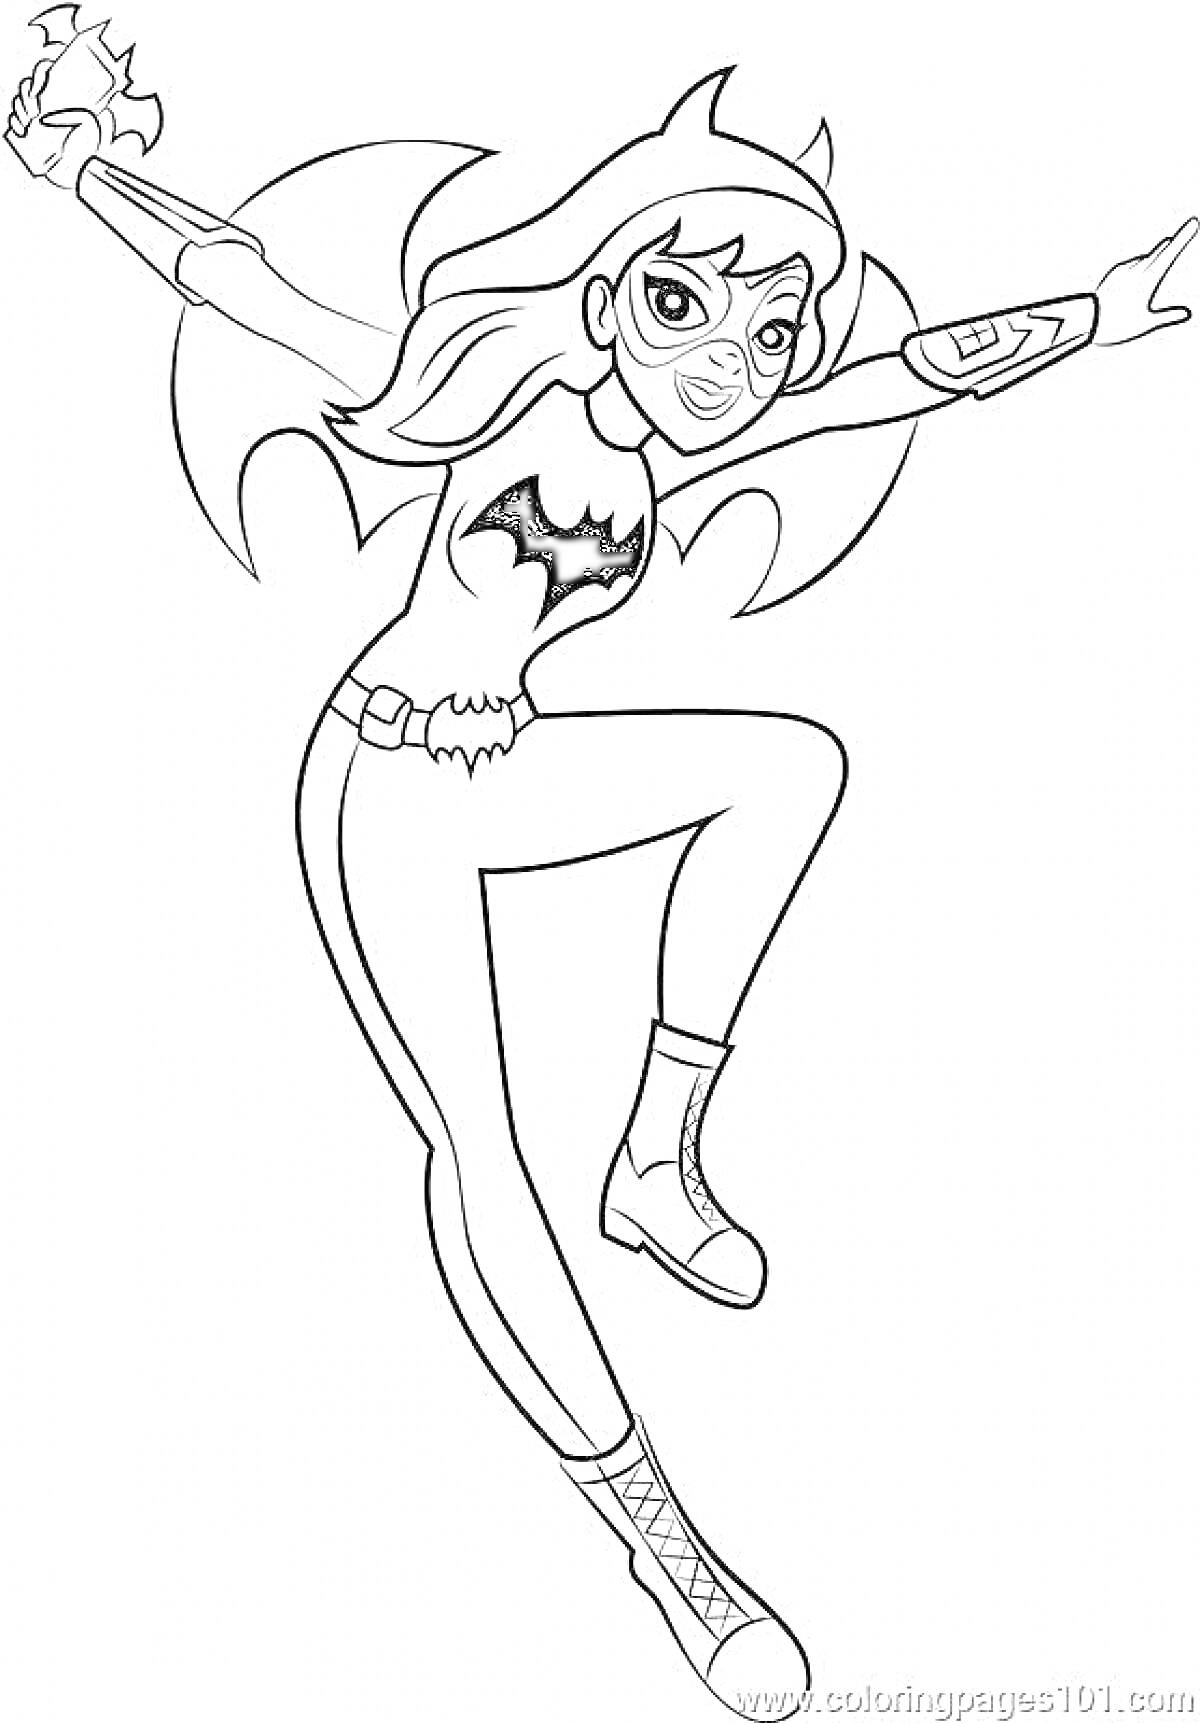 Раскраска Девочка-супергерой в маске, с плащом и символом летучей мыши на костюме